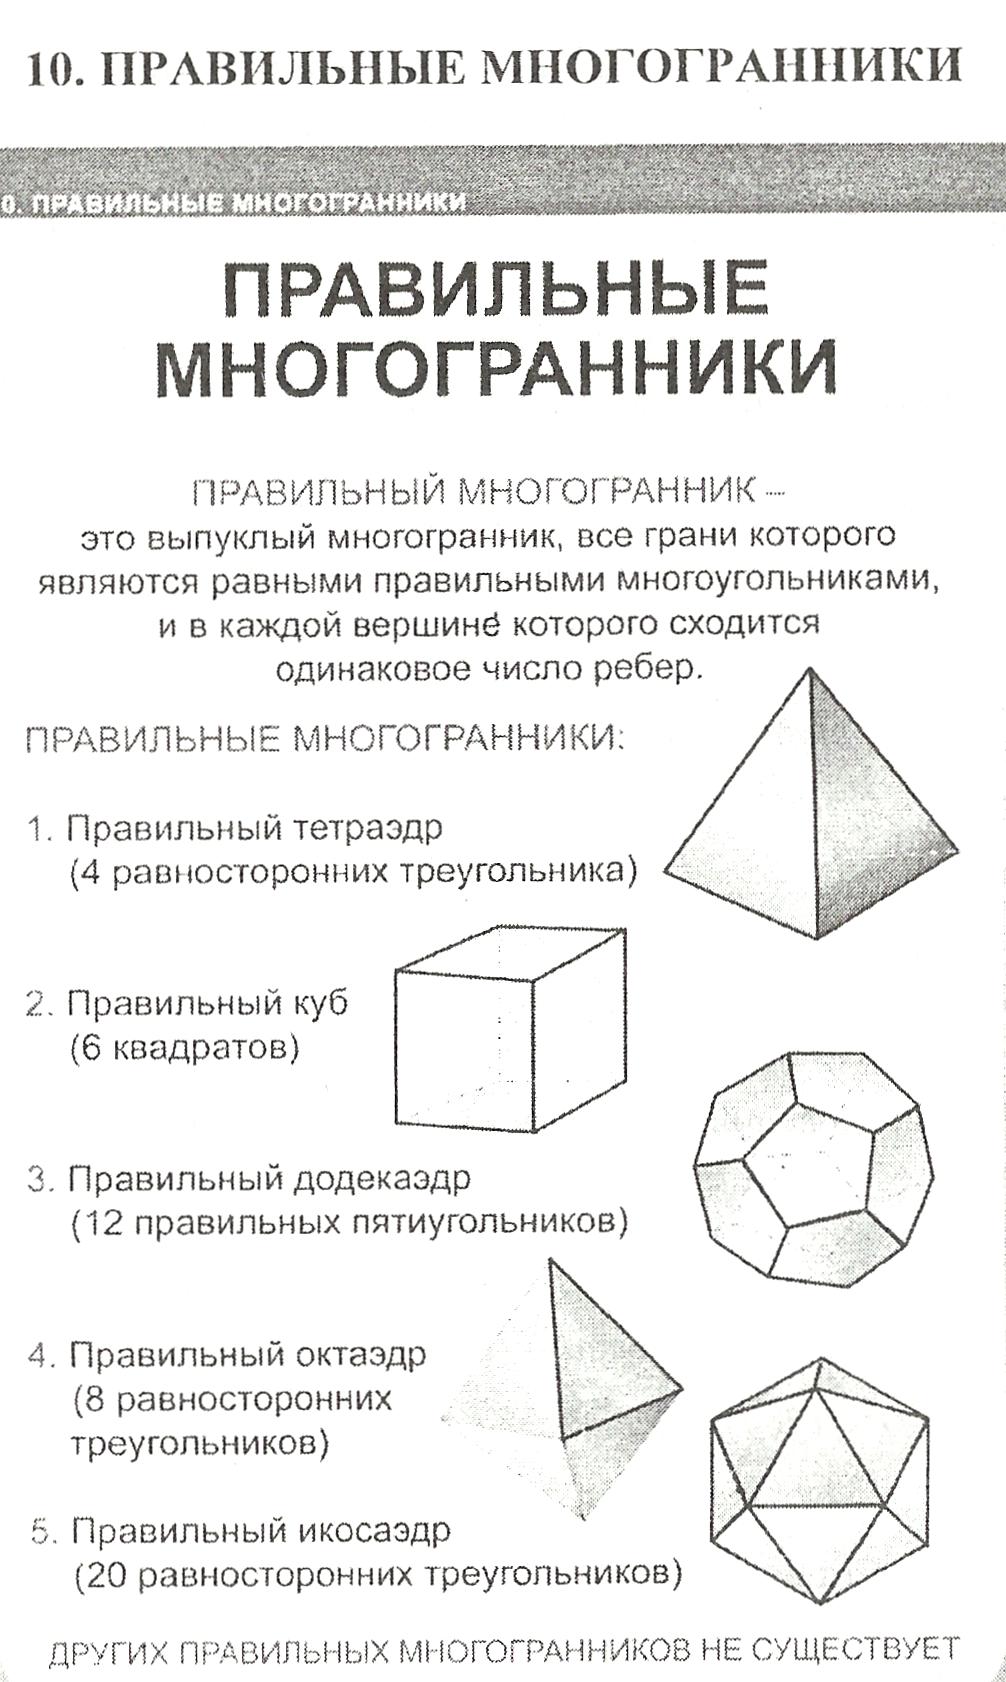 Таблицы по геометрии к темам по стереометрии и методические рекомендации к задачам.